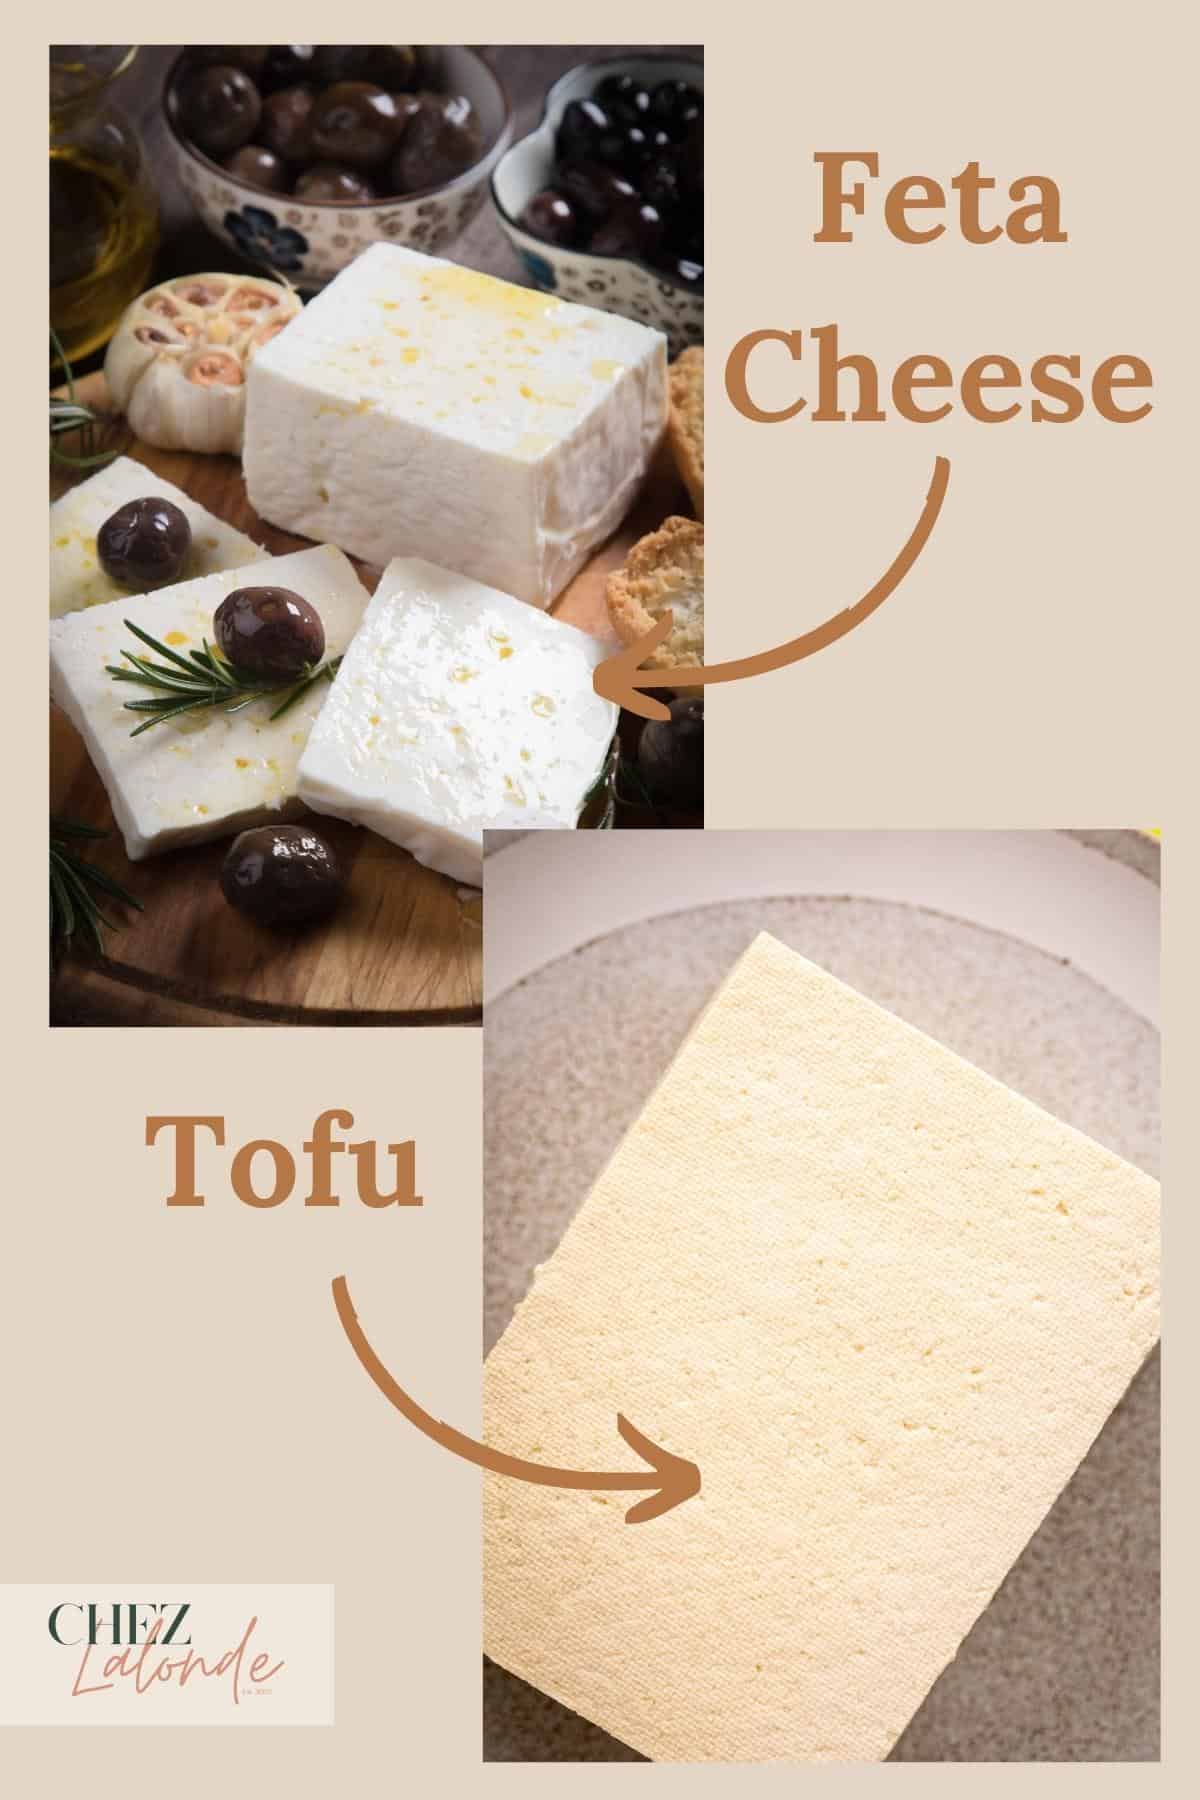 A photo comparison of Tofu and Feta cheese. 